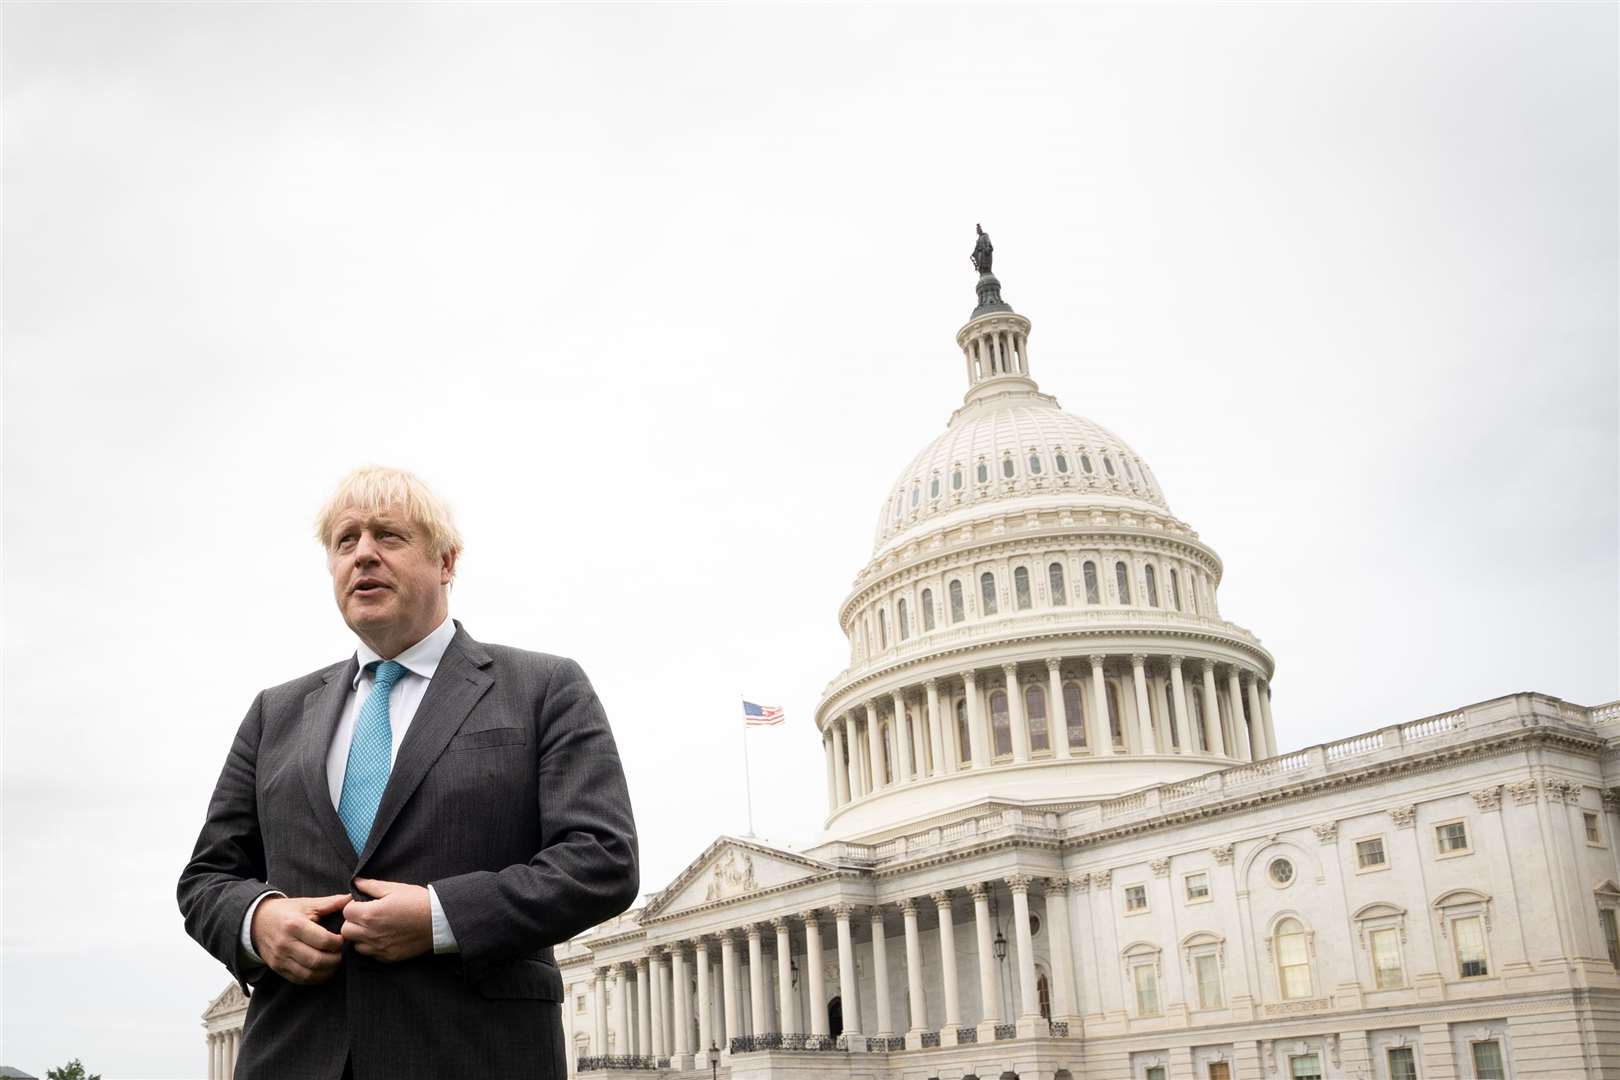 Boris Johnson arrives at the Capitol Building in Washington DC (Stefan Rousseau/PA)